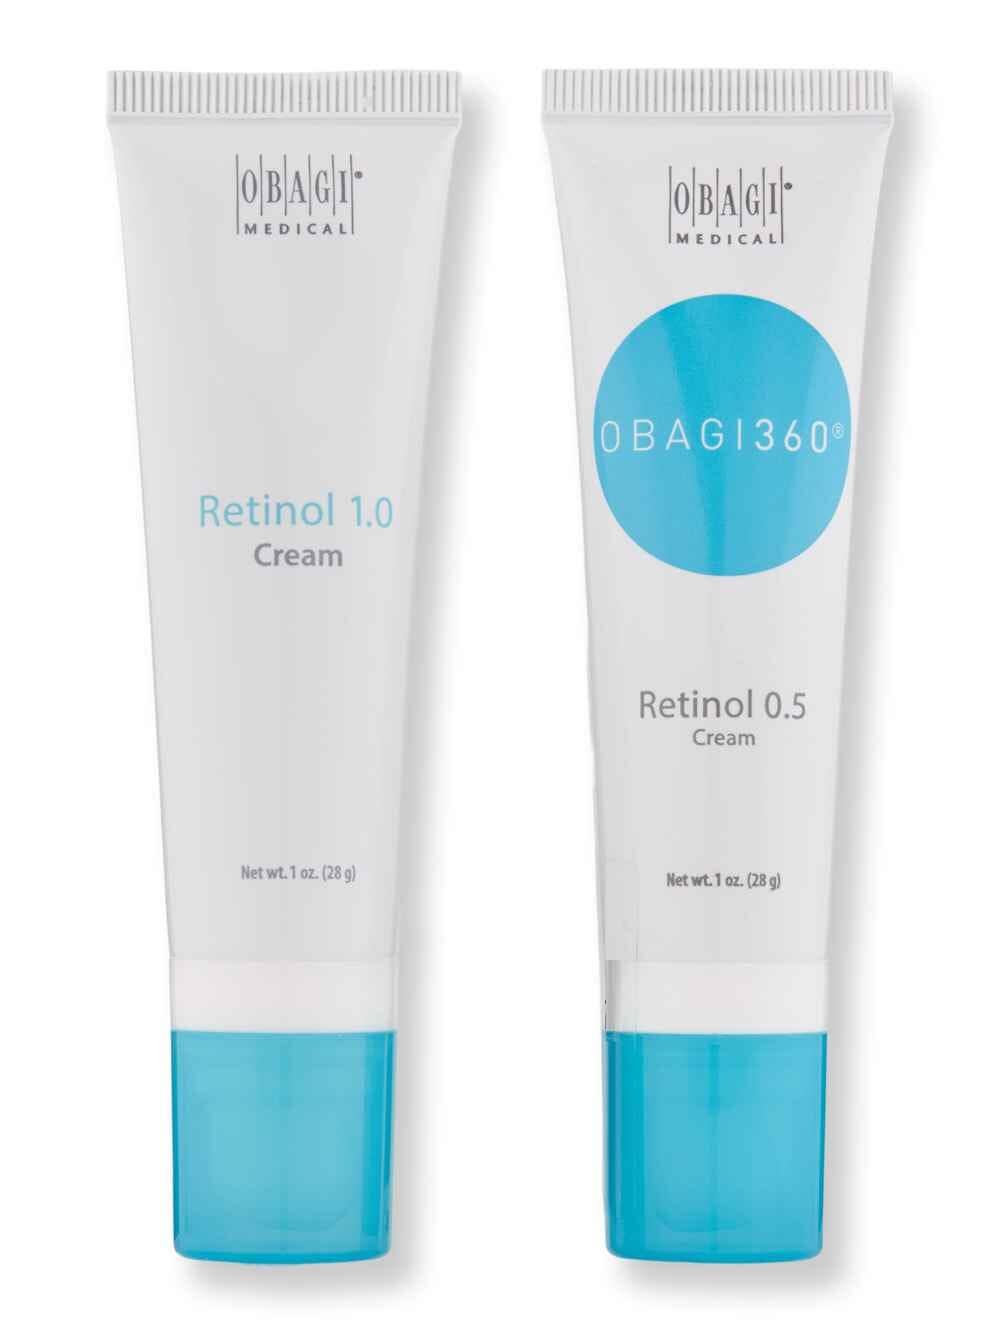 Obagi Obagi Obagi360 Retinol 0.5 1oz & Retinol 1.0 1oz Skin Care Treatments 